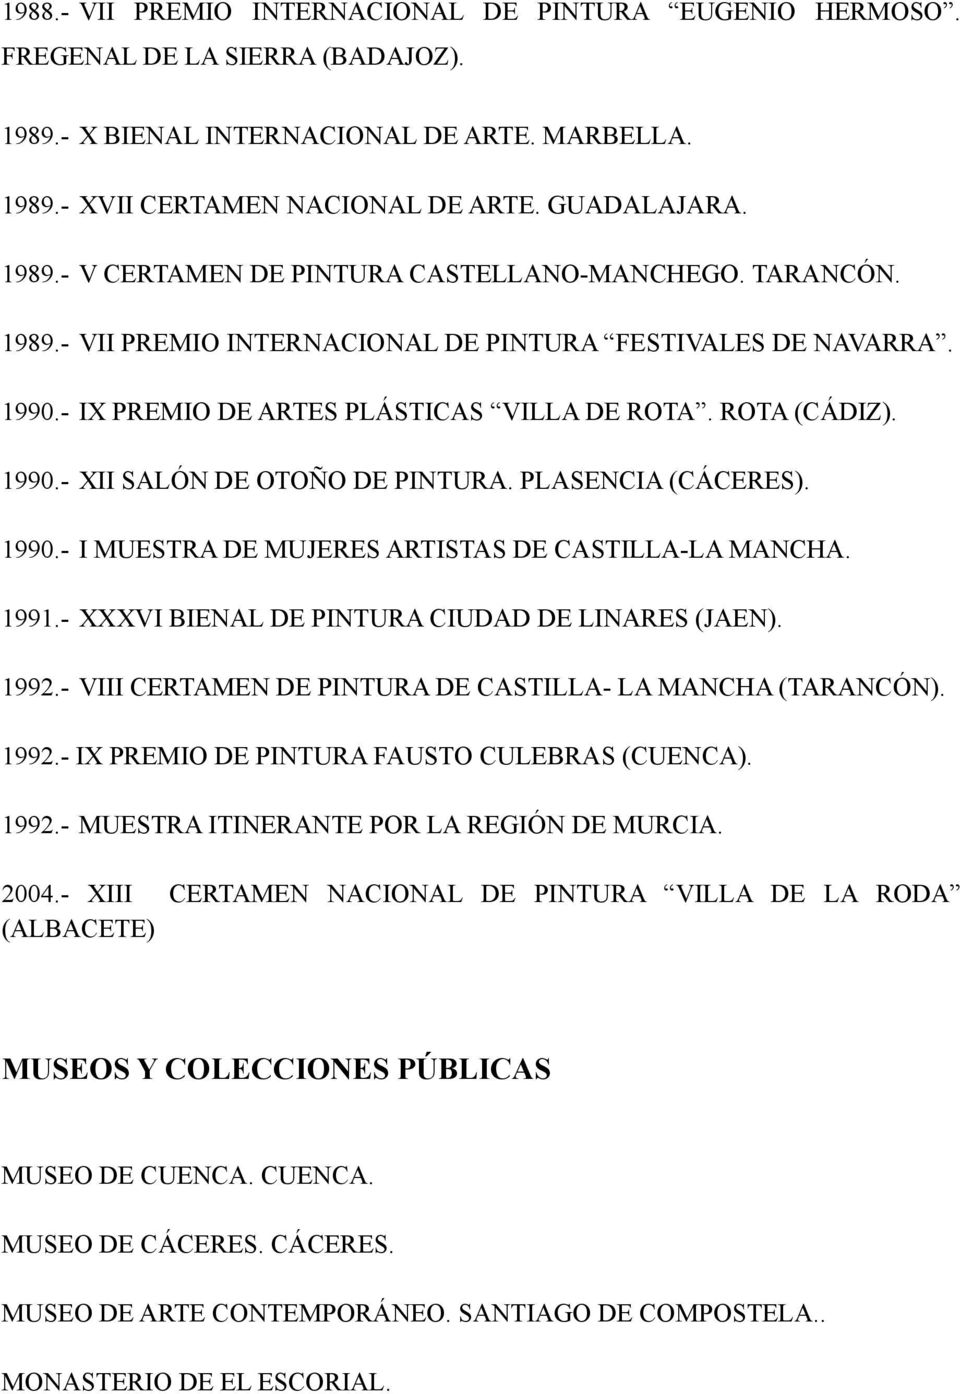 1990.- I MUESTRA DE MUJERES ARTISTAS DE CASTILLA-LA MANCHA. 1991.- XXXVI BIENAL DE PINTURA CIUDAD DE LINARES (JAEN). 1992.- VIII CERTAMEN DE PINTURA DE CASTILLA- LA MANCHA (TARANCÓN). 1992.- IX PREMIO DE PINTURA FAUSTO CULEBRAS (CUENCA).